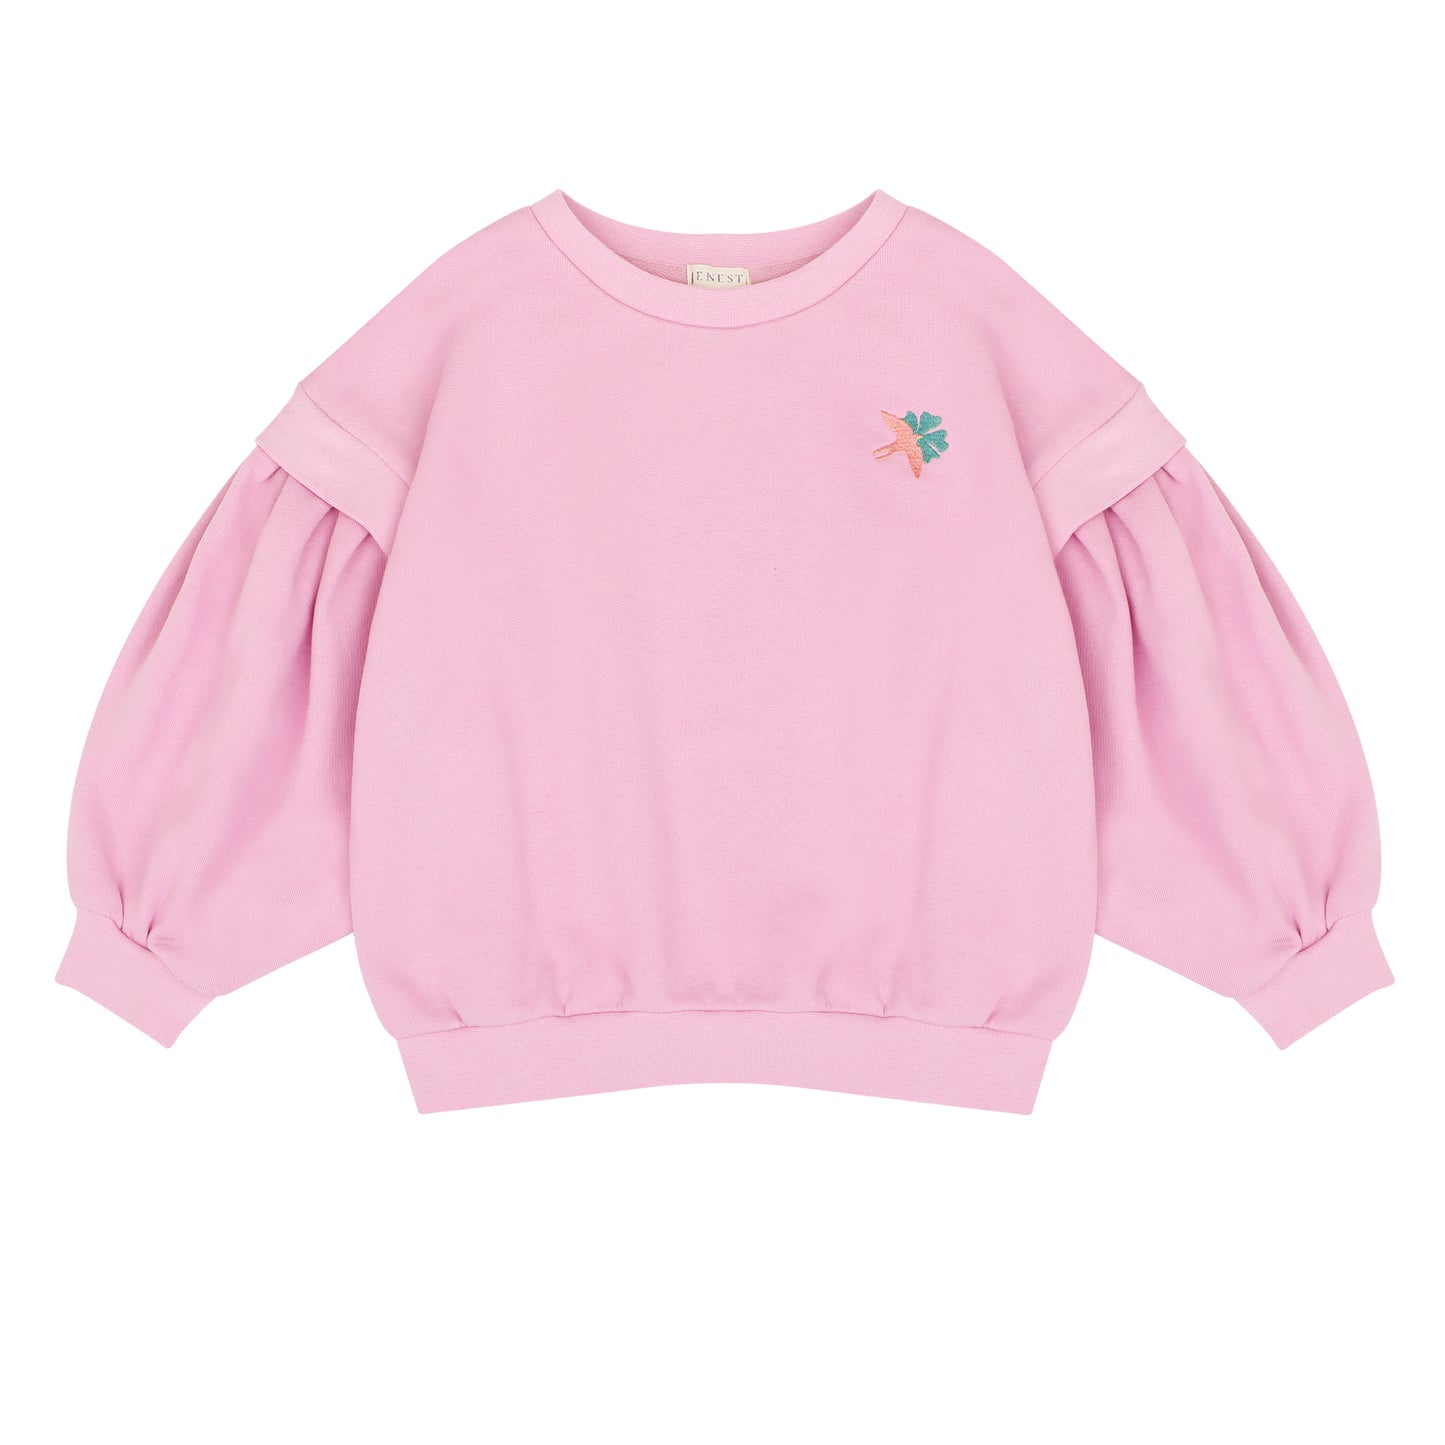 Balloon bird sweater Raspberry pink Jenest